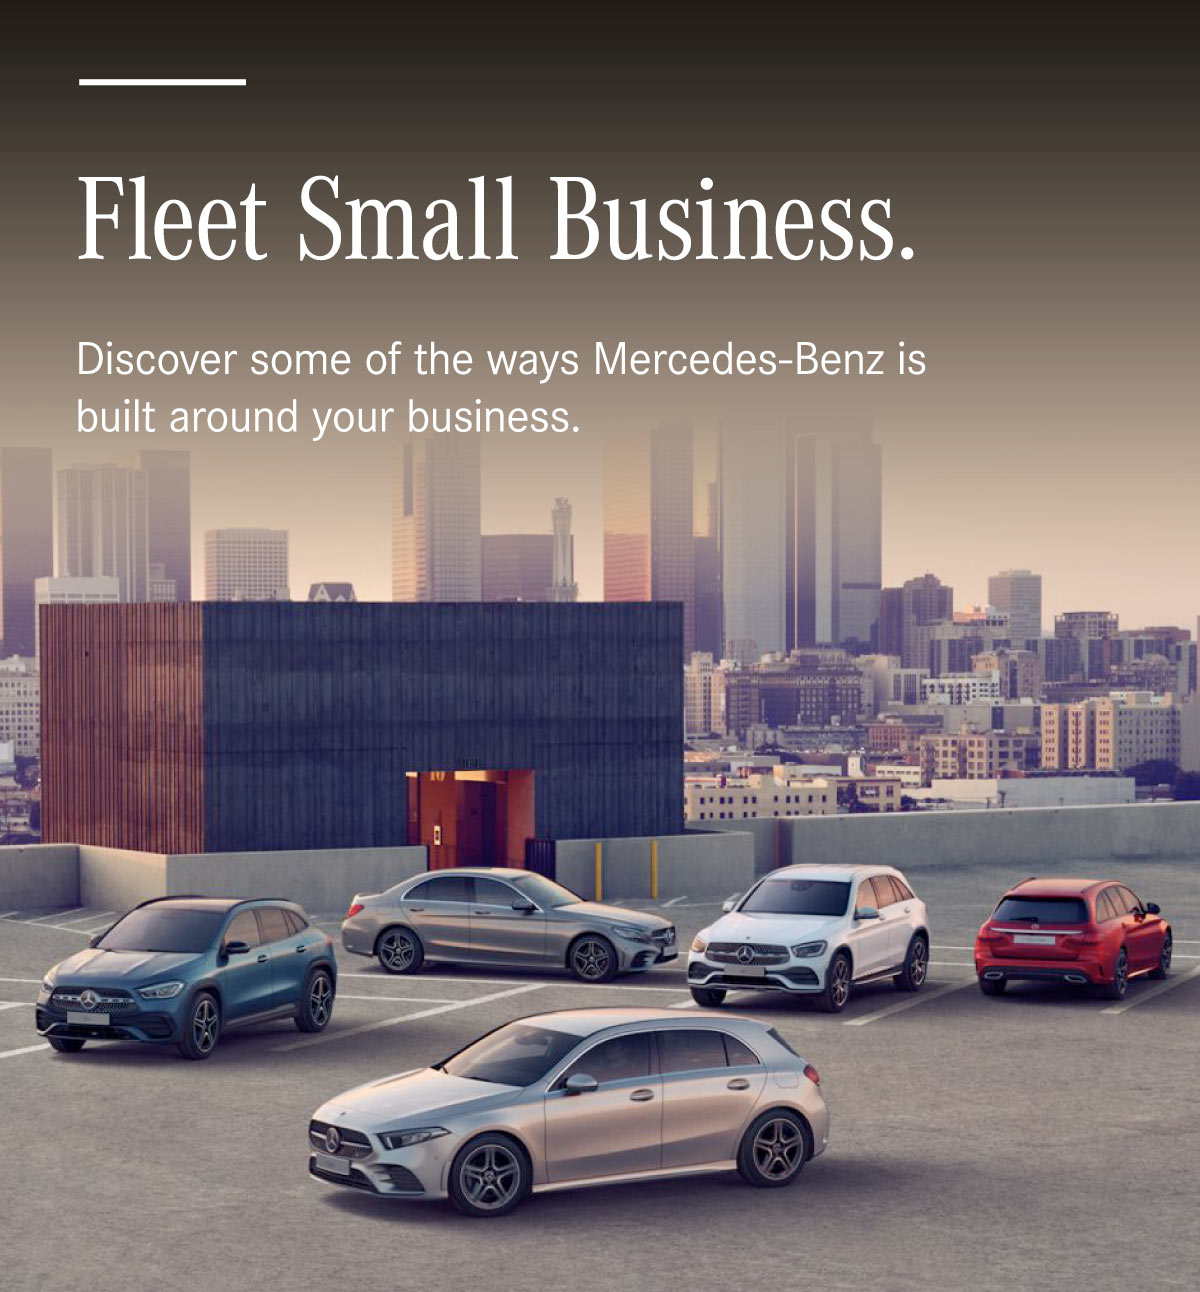 Fleet Small Business